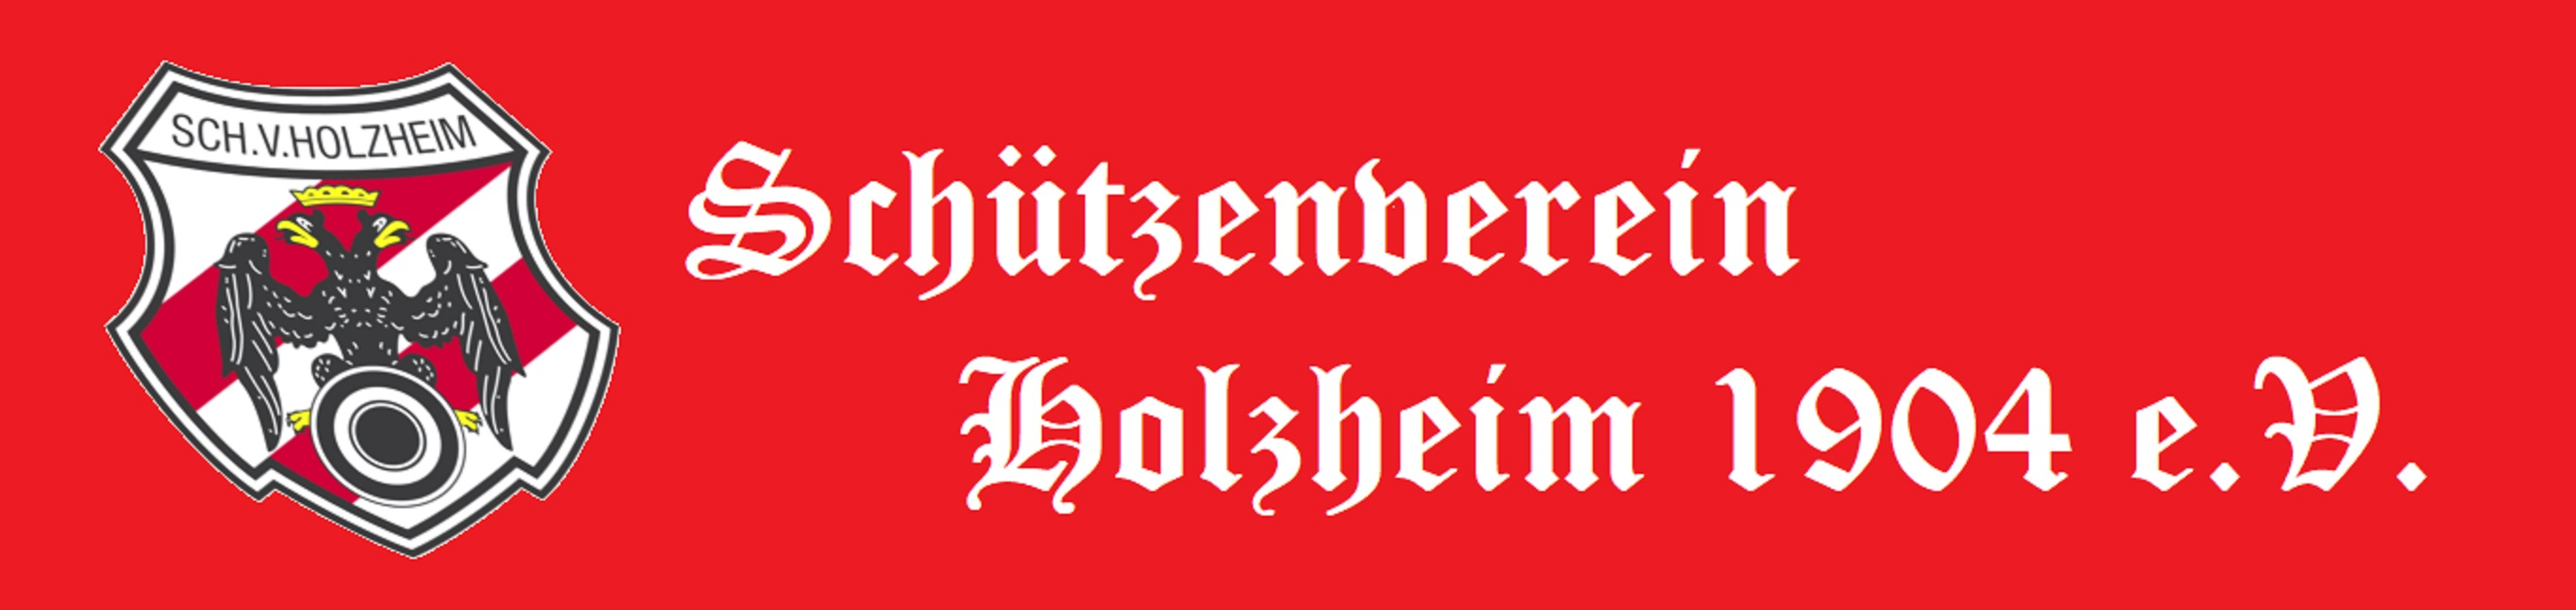 Schützenverein Holzheim e.V.